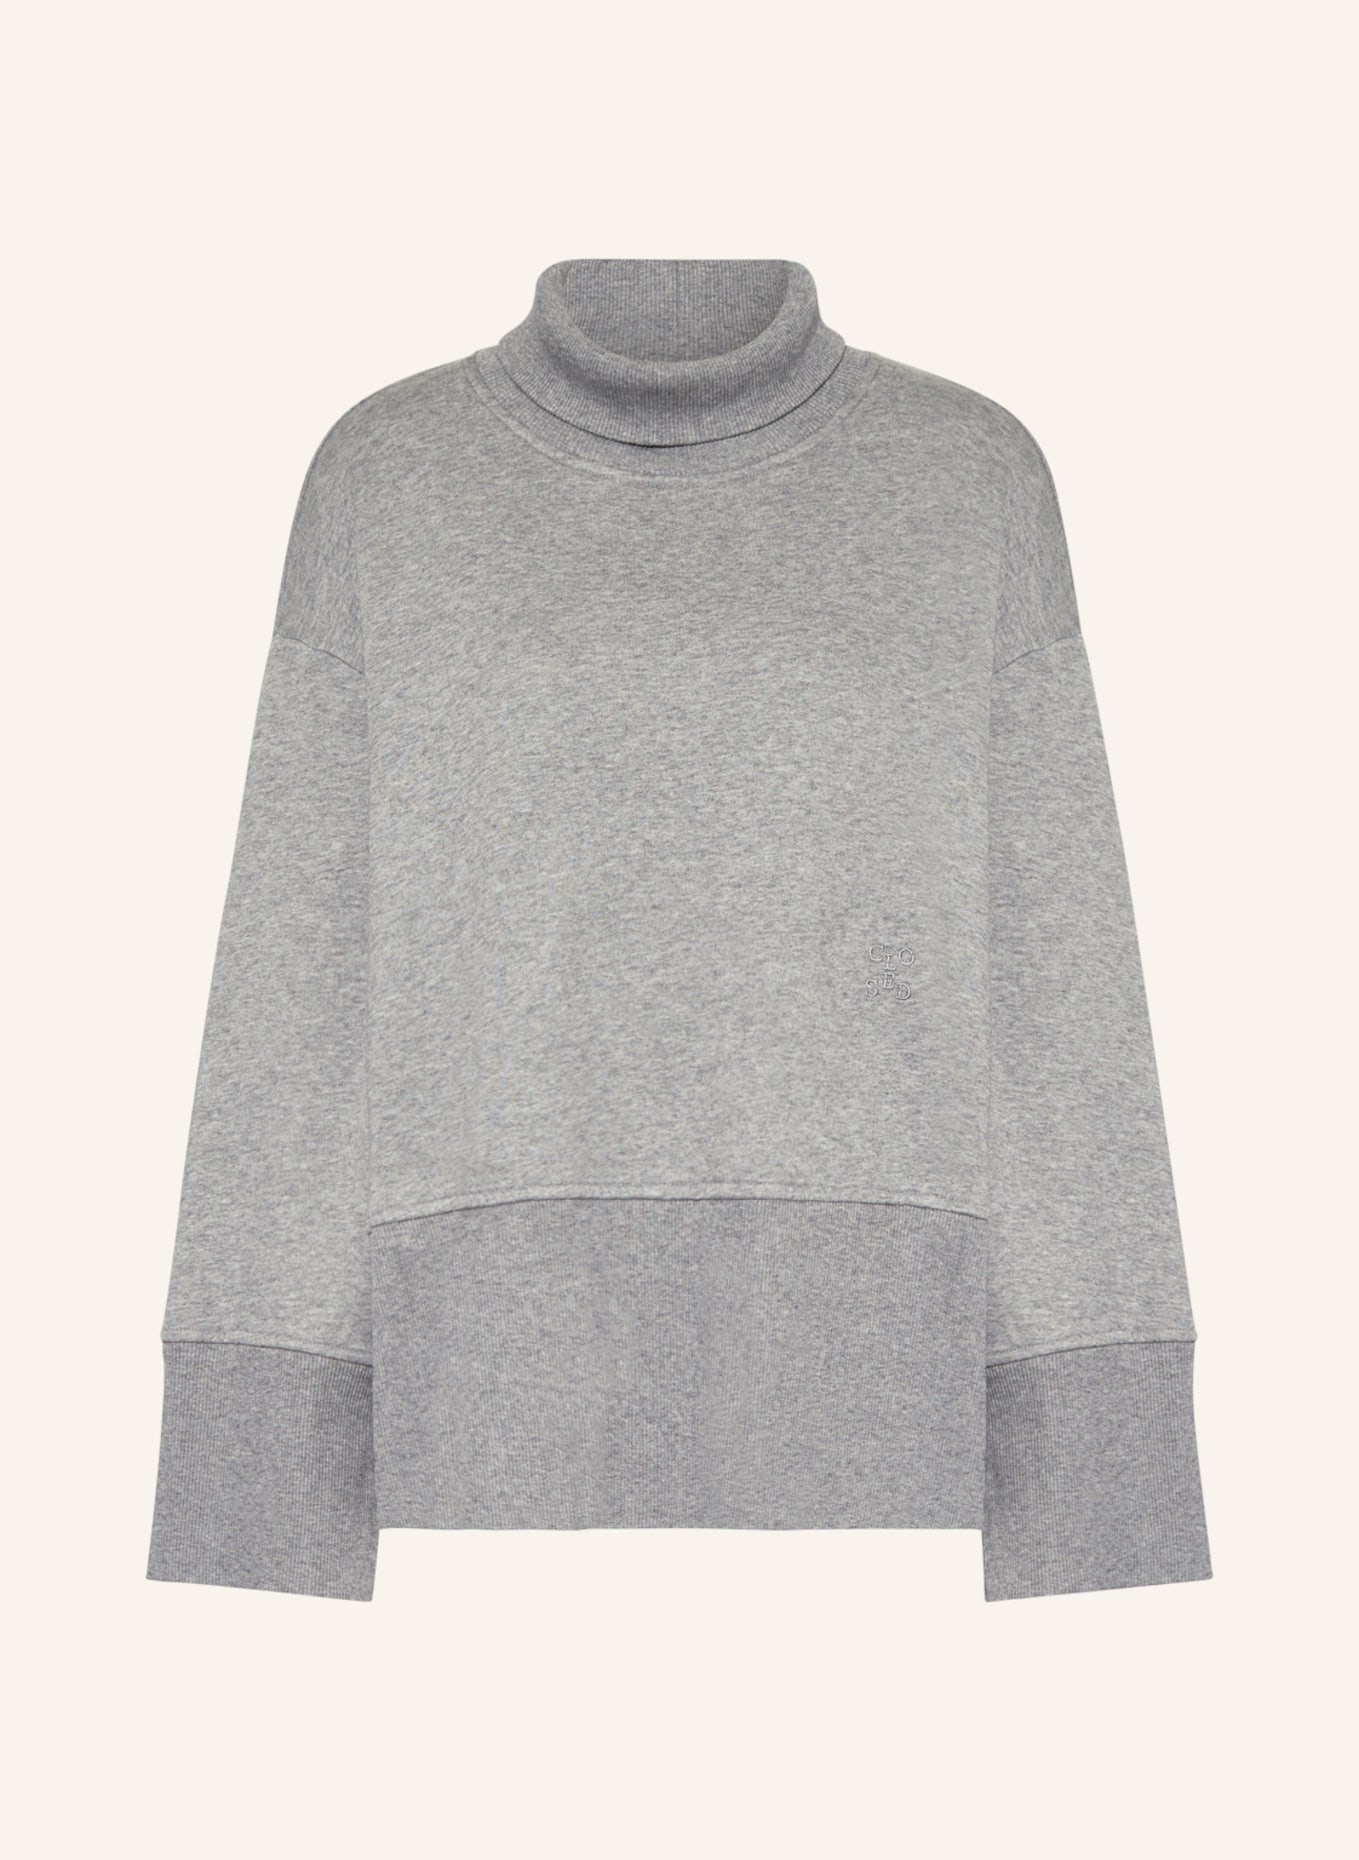 CLOSED Sweatshirt, Color: GRAY (Image 1)